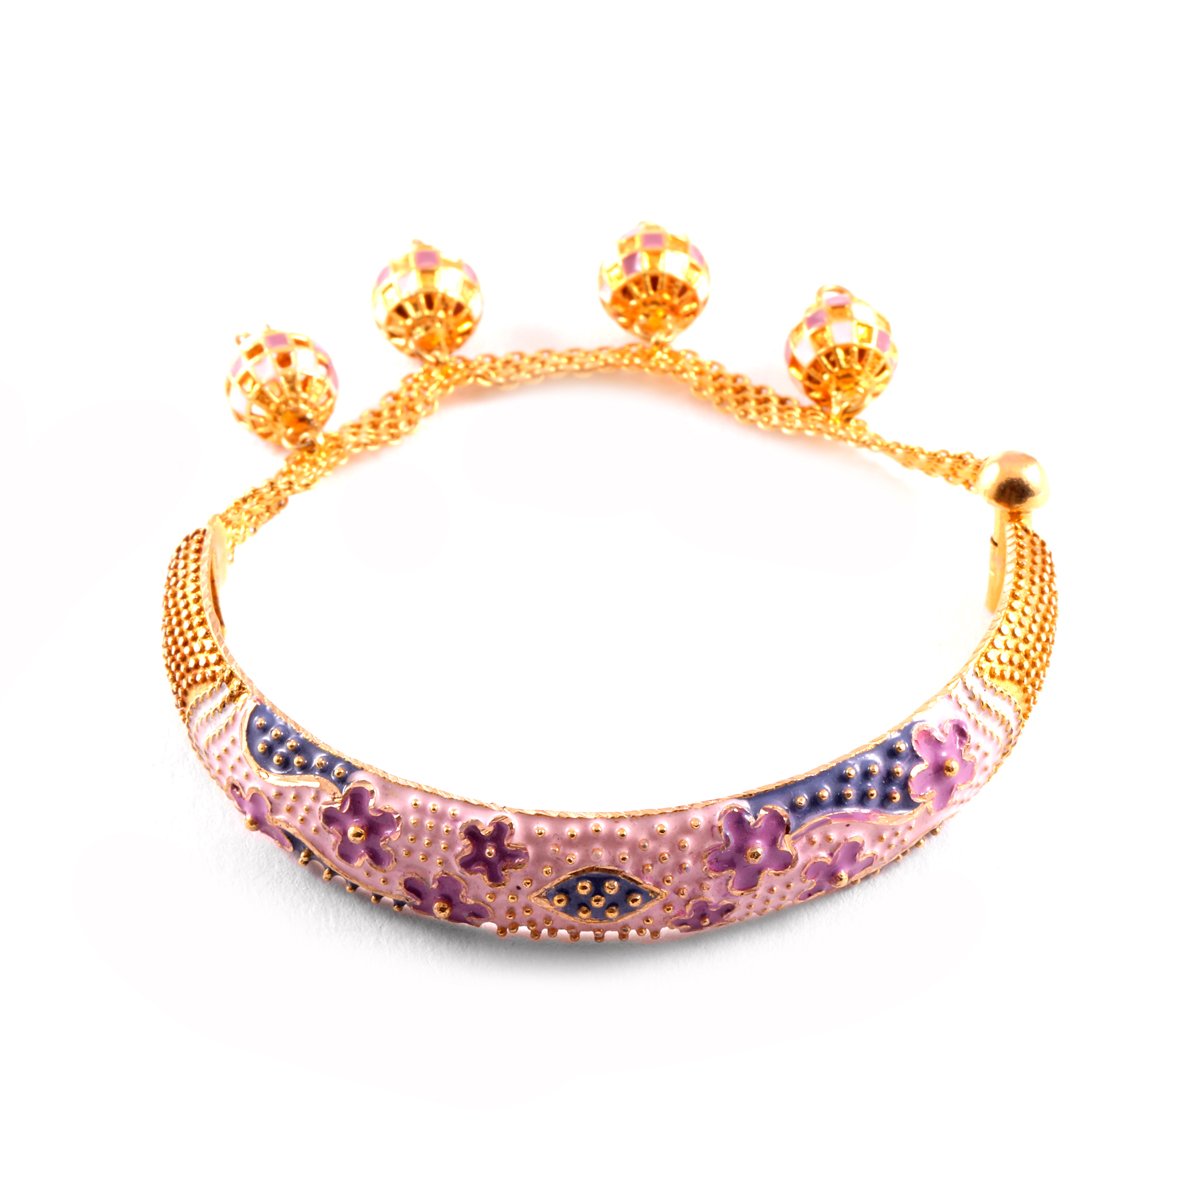 luxury bracelet is a 18-grade gold standard of 19.77 grams